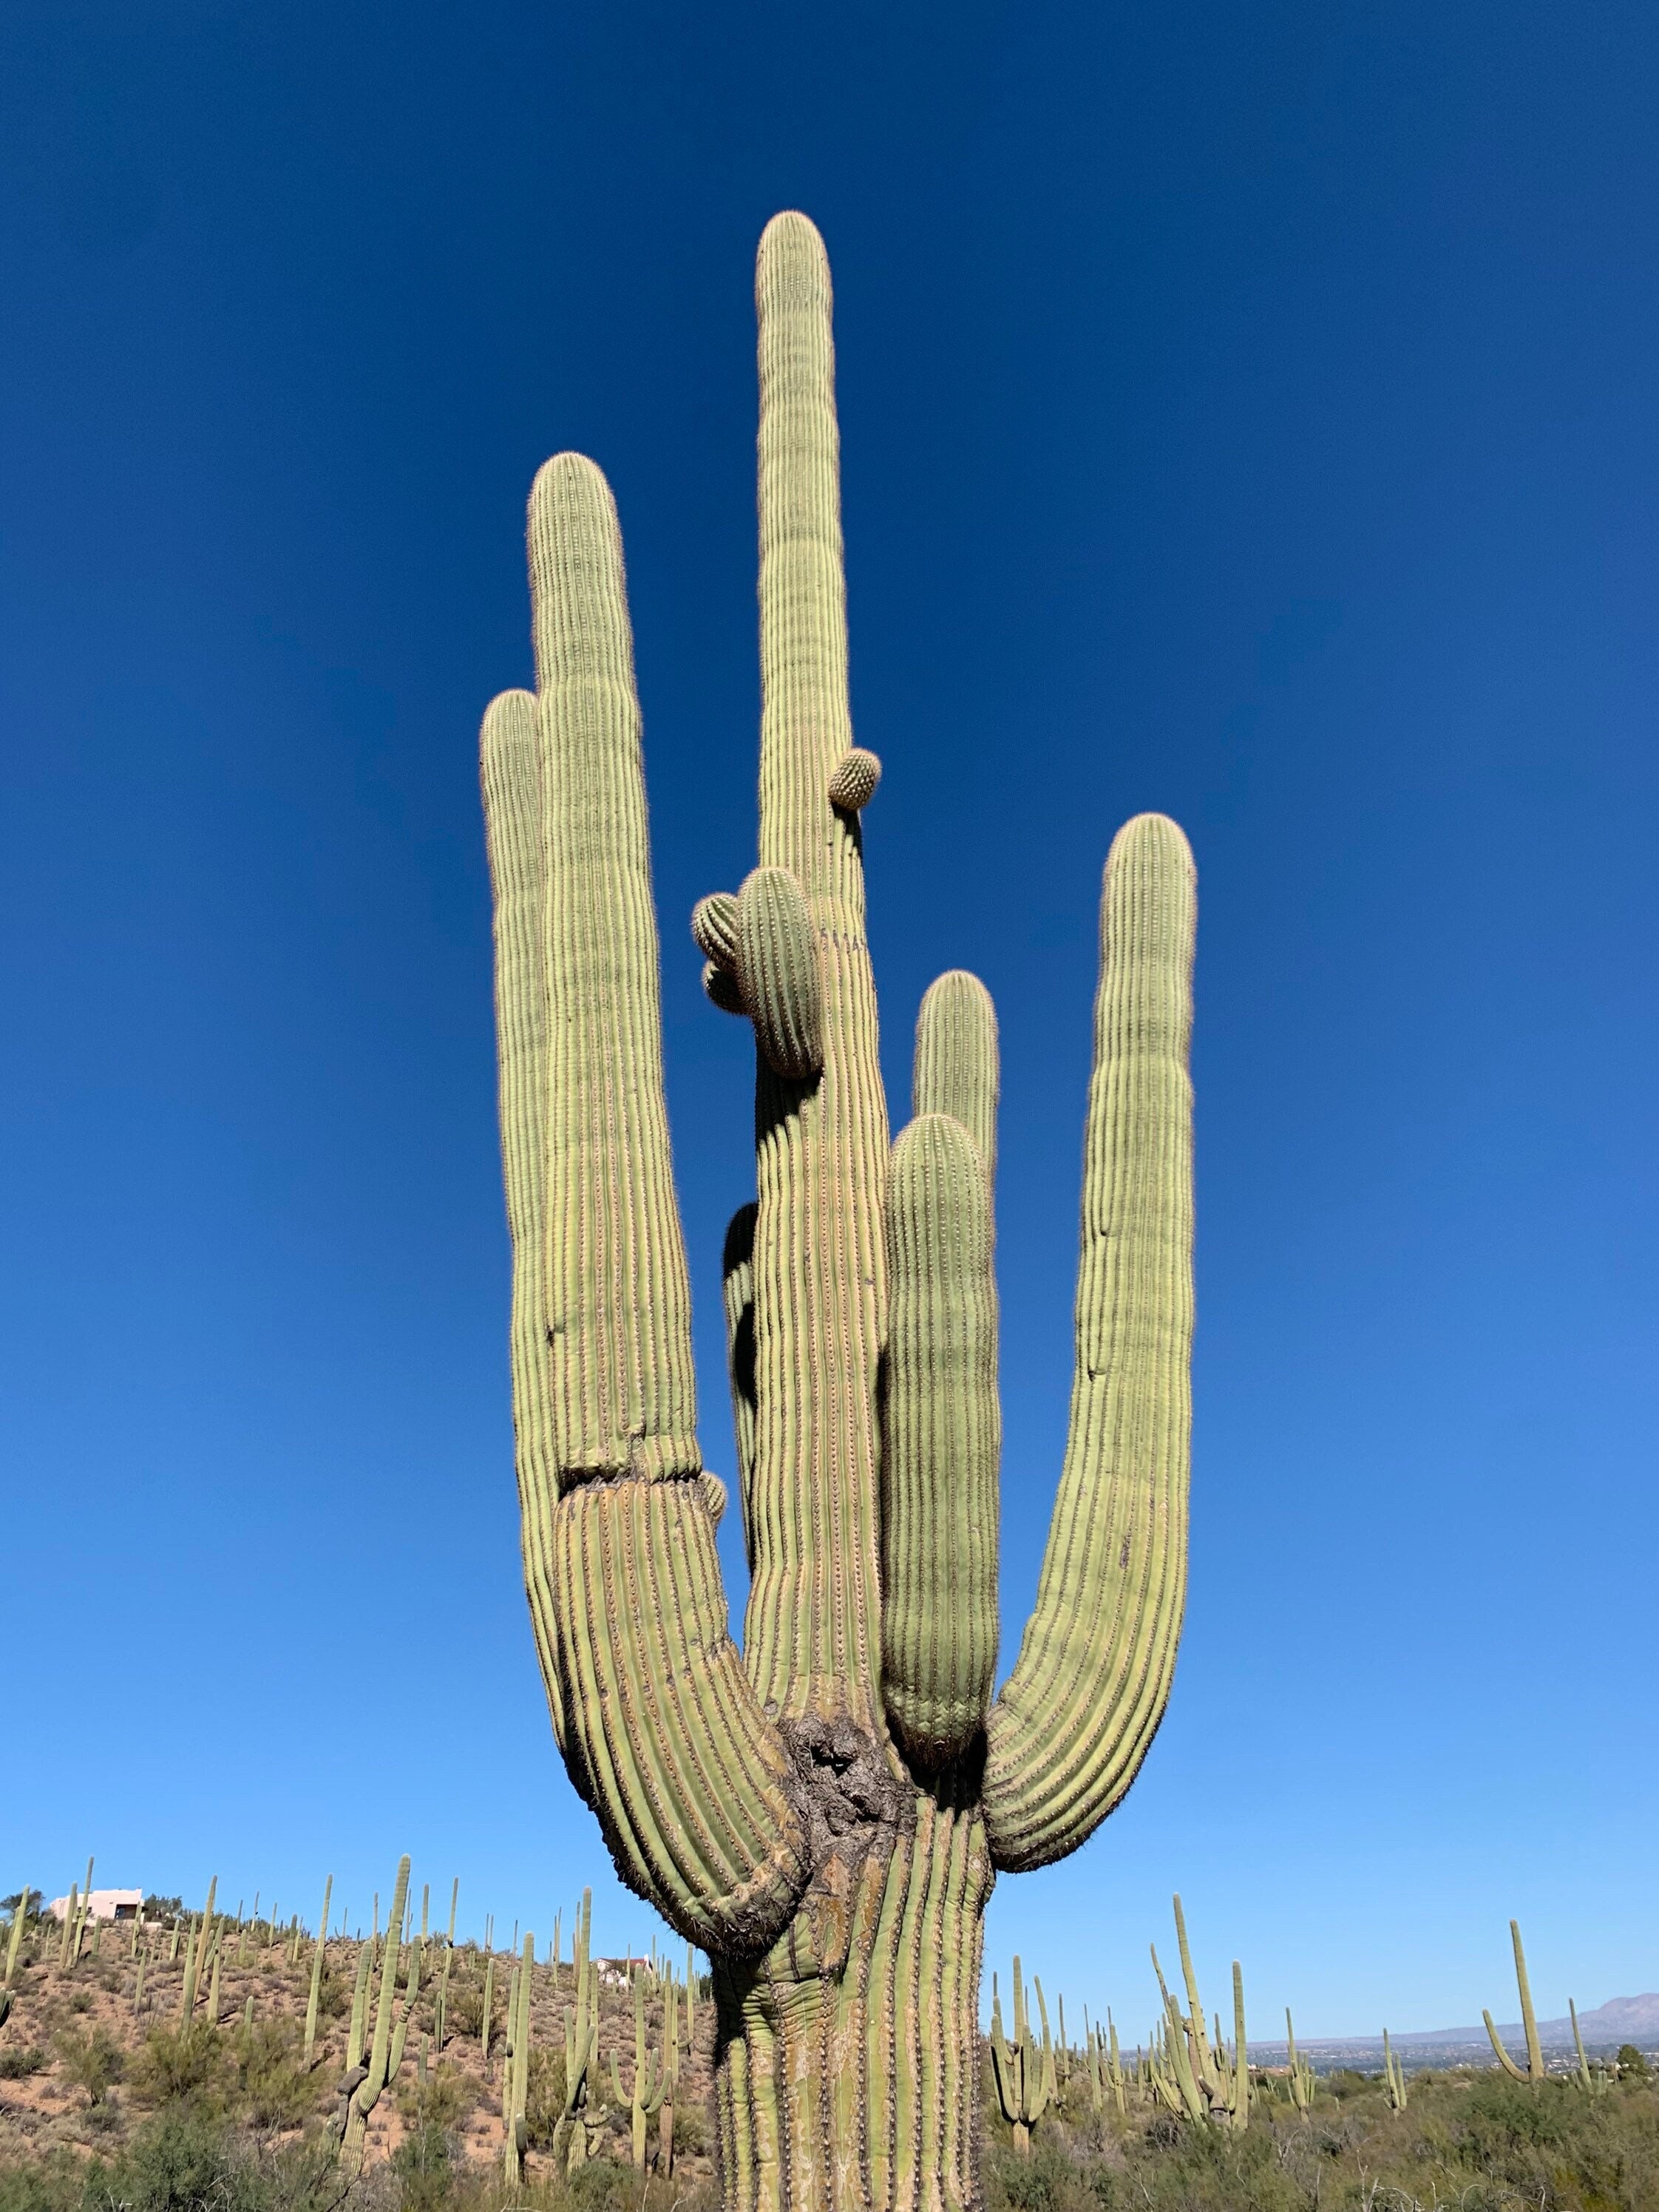 Cactus Saguaro Carnegiea Gigantea Closeup En Invierno En El Parque De  Montaña Sur Y Preservar El Sendero De Cañón Pima Phoenix Sur Foto de  archivo - Imagen de nubes, arizona: 205849686